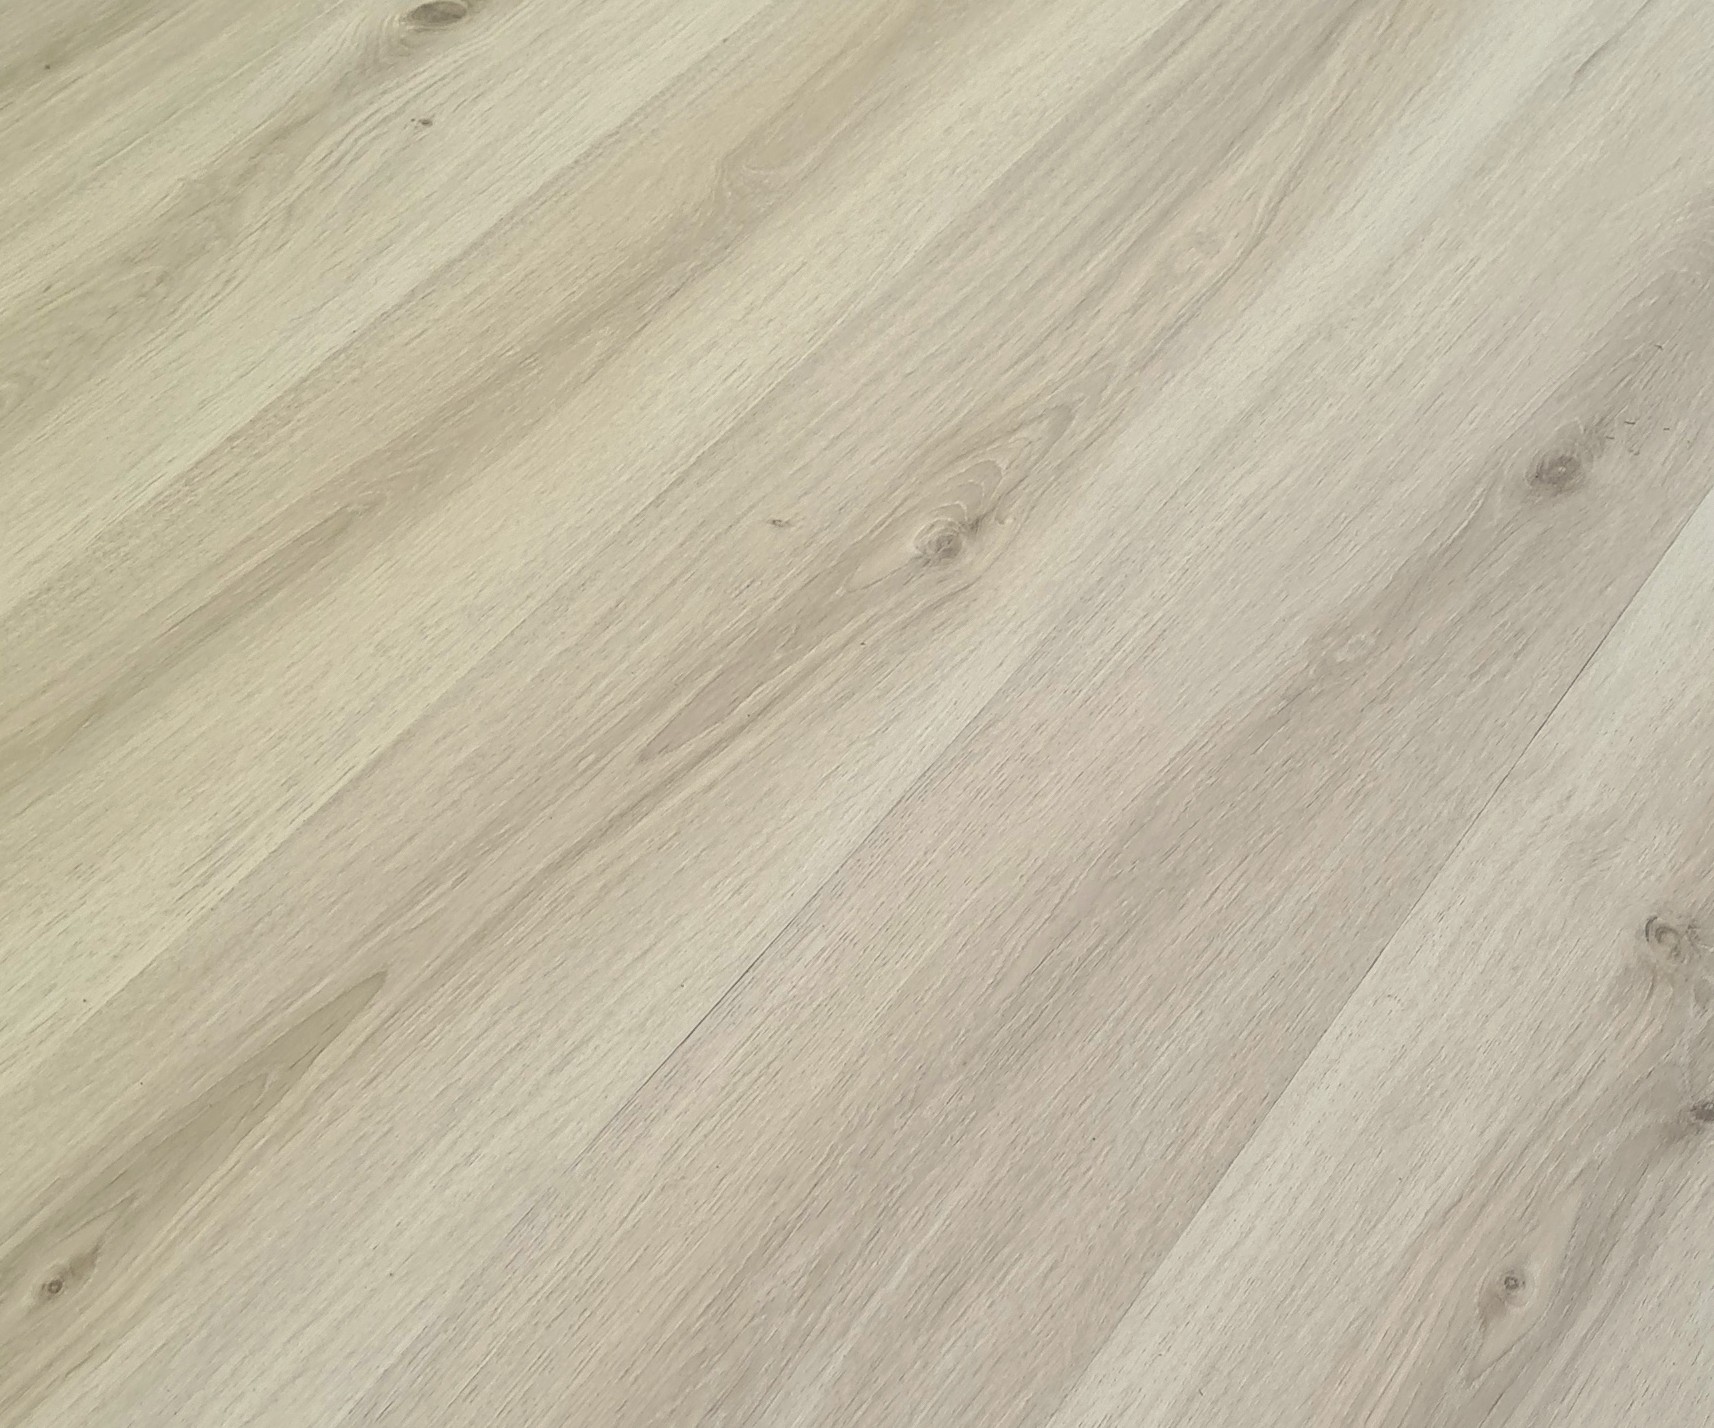 Podlaha vinylová zámková HDF Home kalahari oak beige KPP